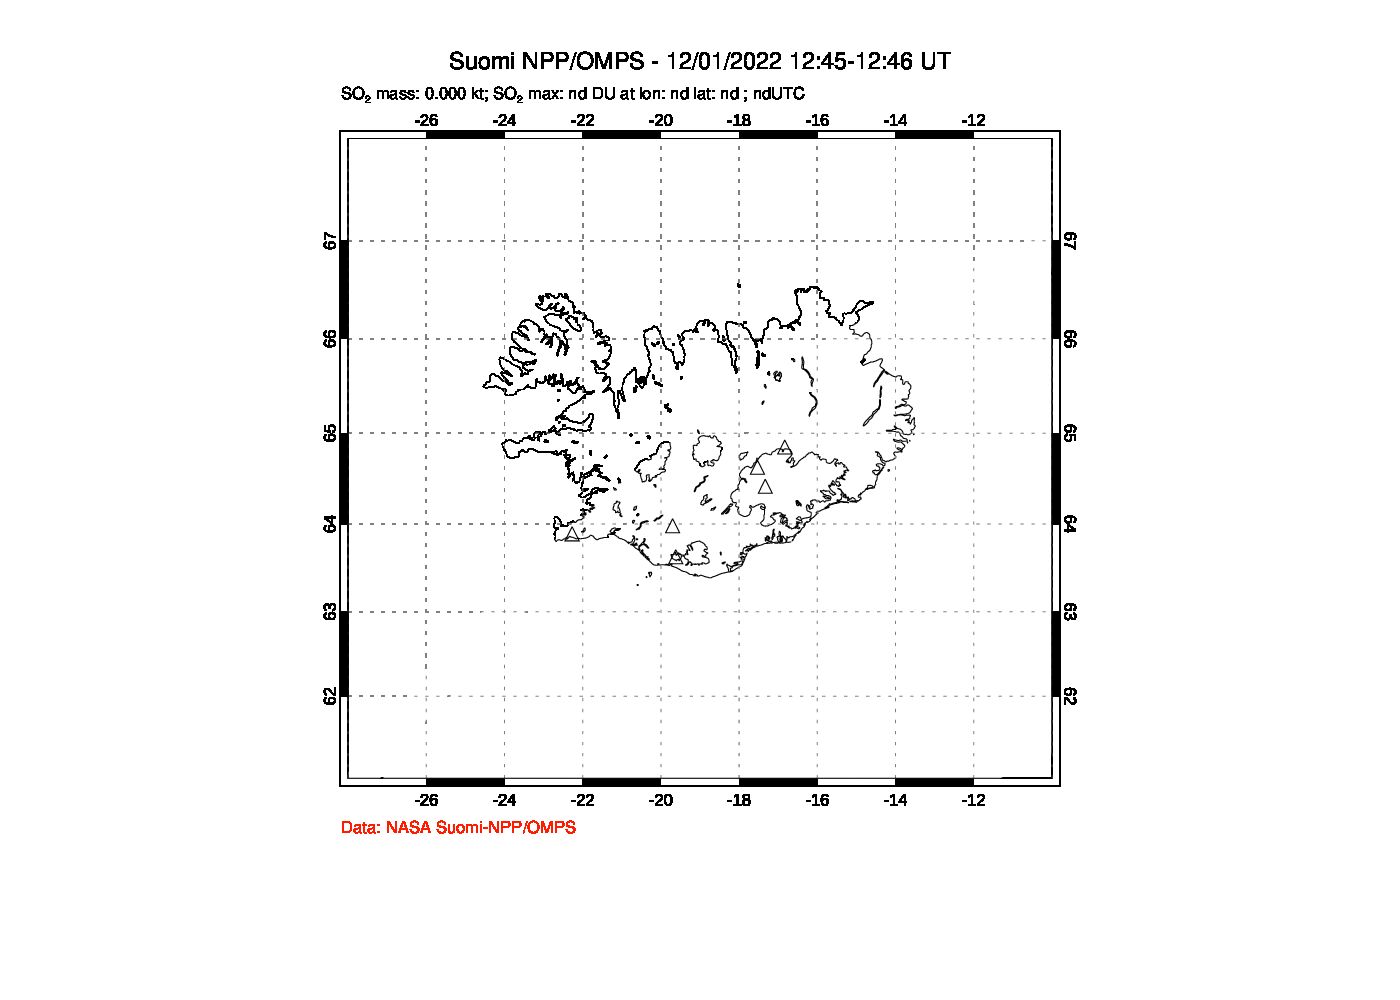 A sulfur dioxide image over Iceland on Dec 01, 2022.